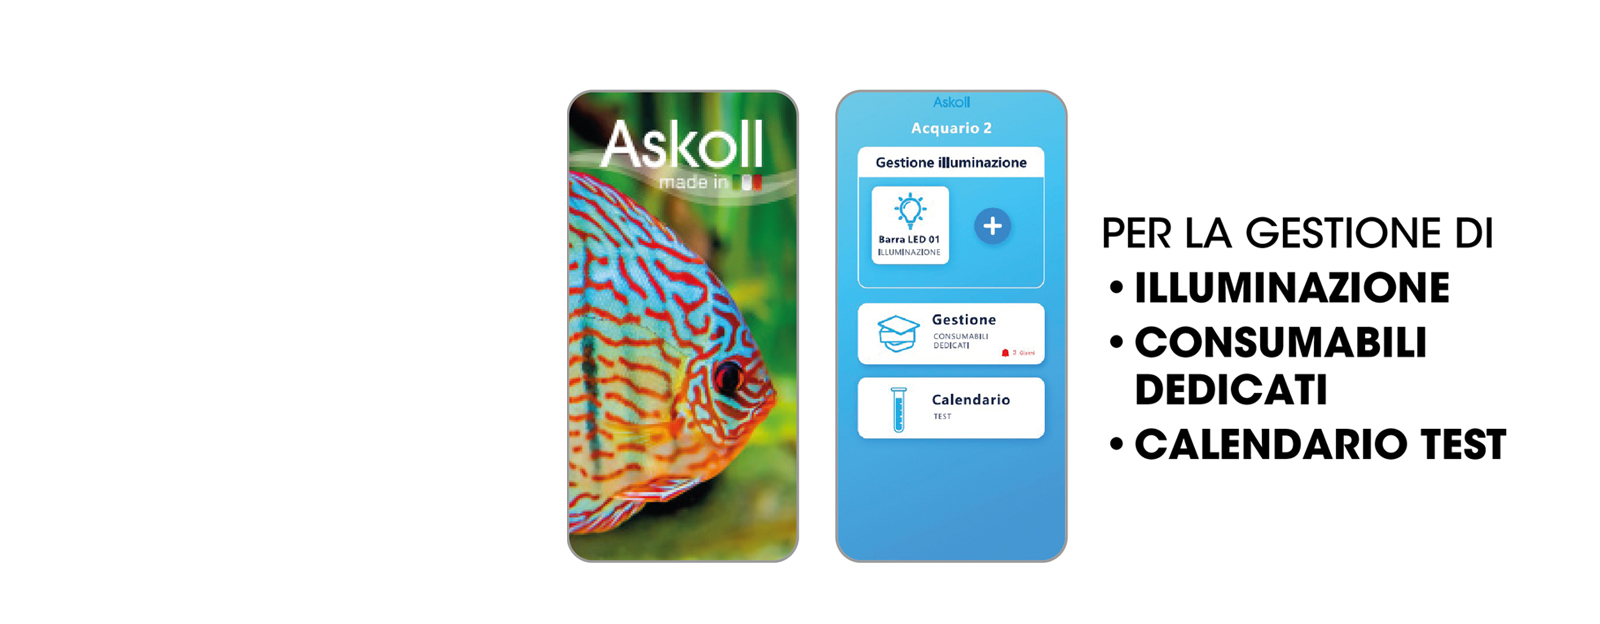 Askoll LUX APP: tutte le funzionalità dell'acquario a portata di smartphone